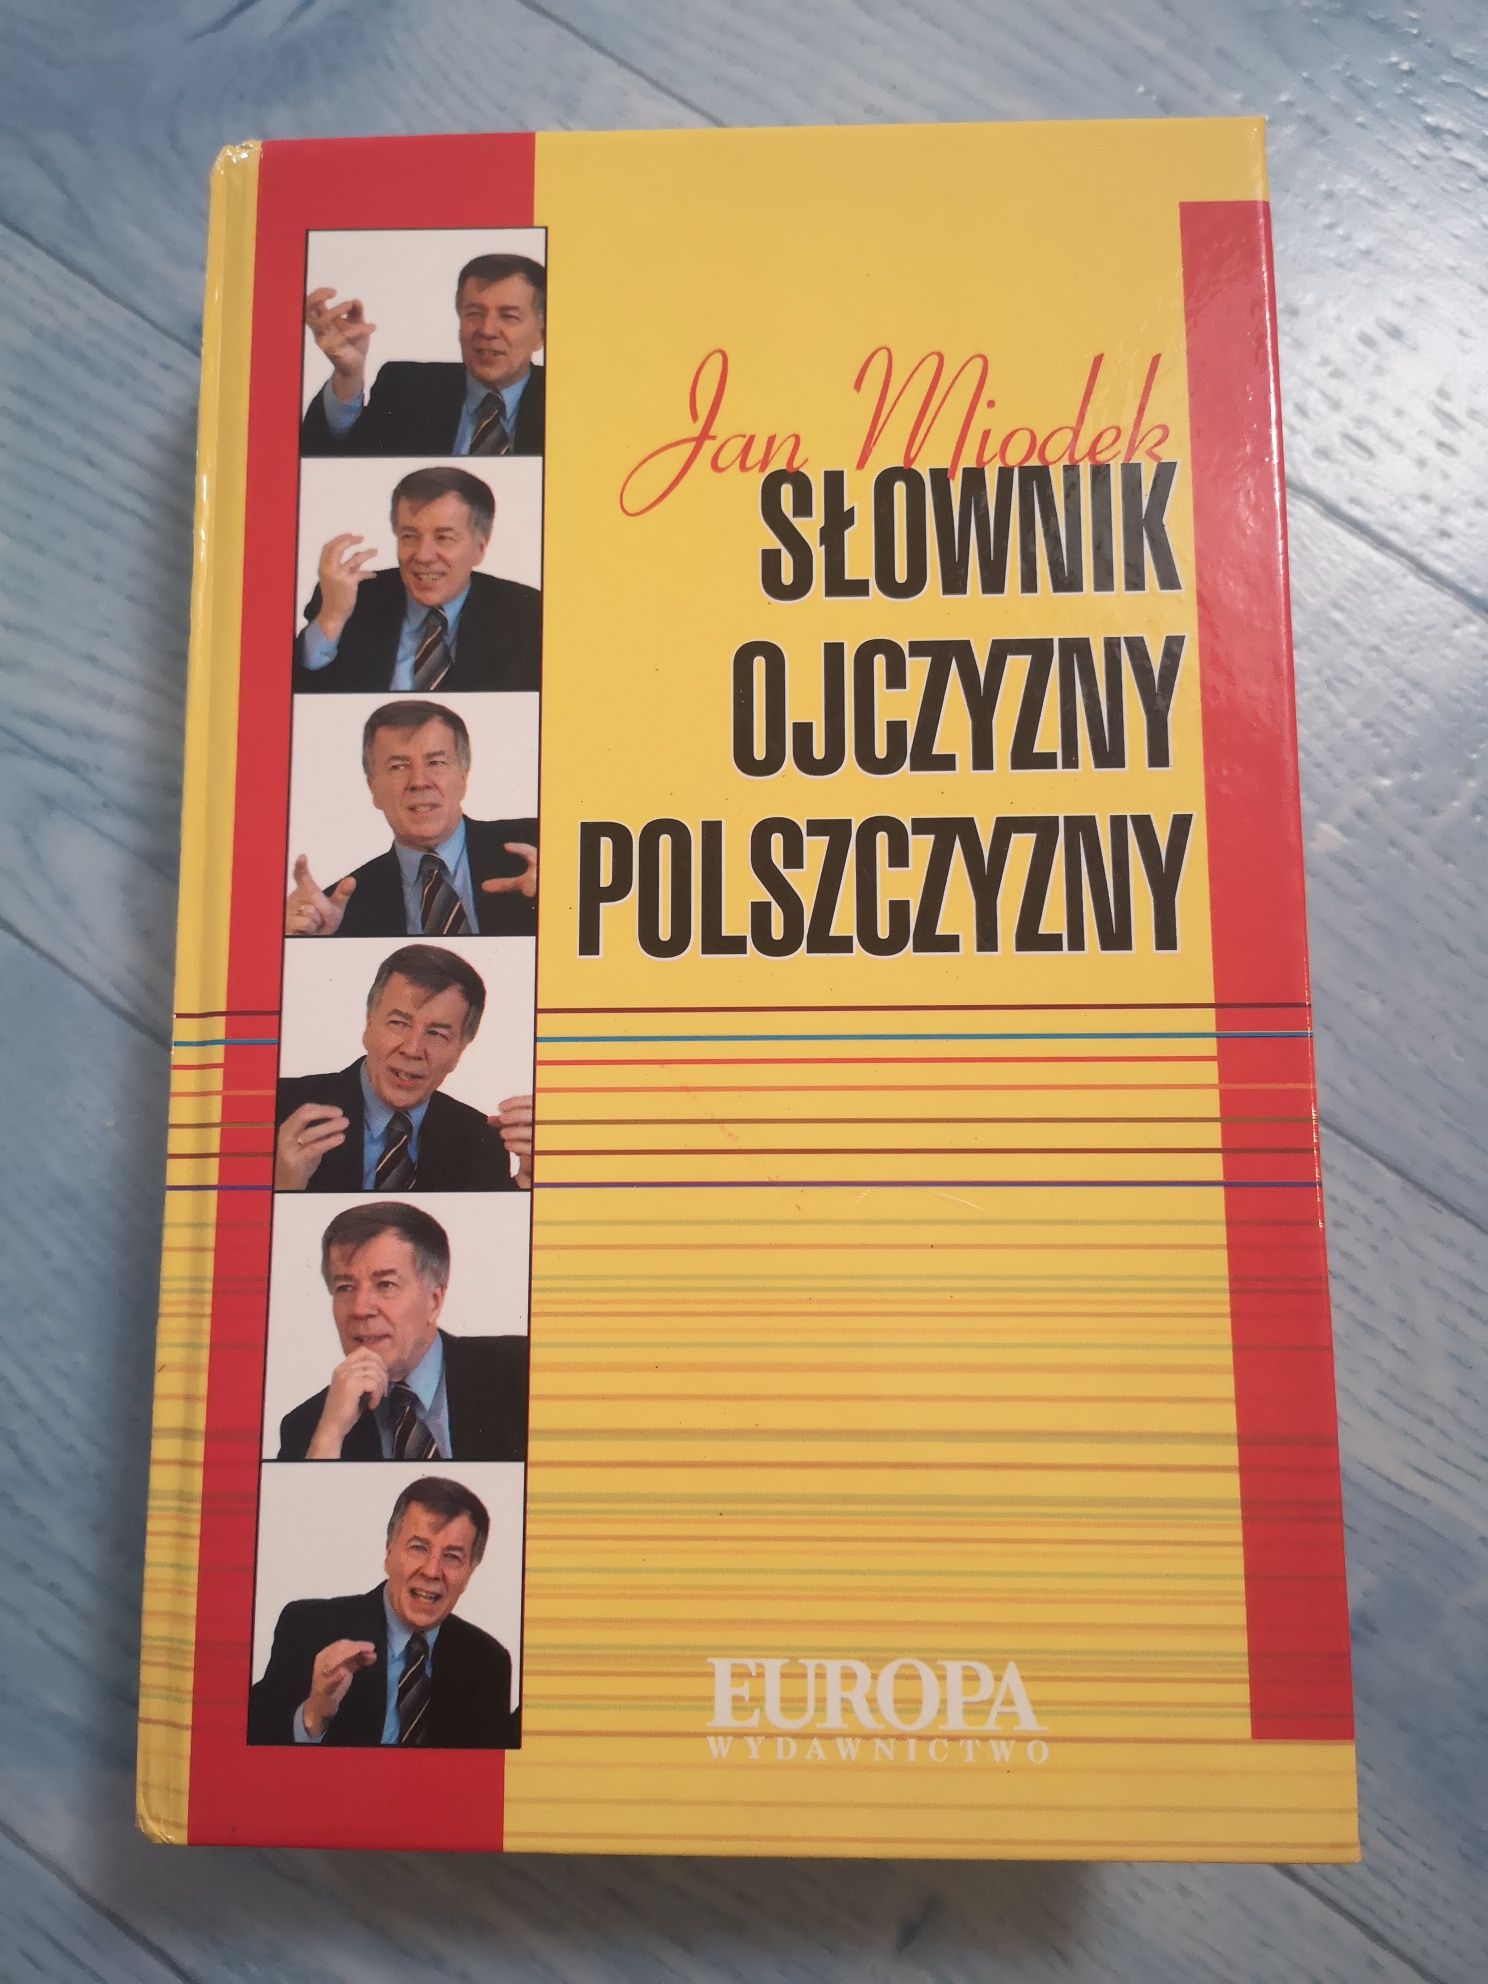 Słownik ojczyzny polszczyzny Jan Miodek